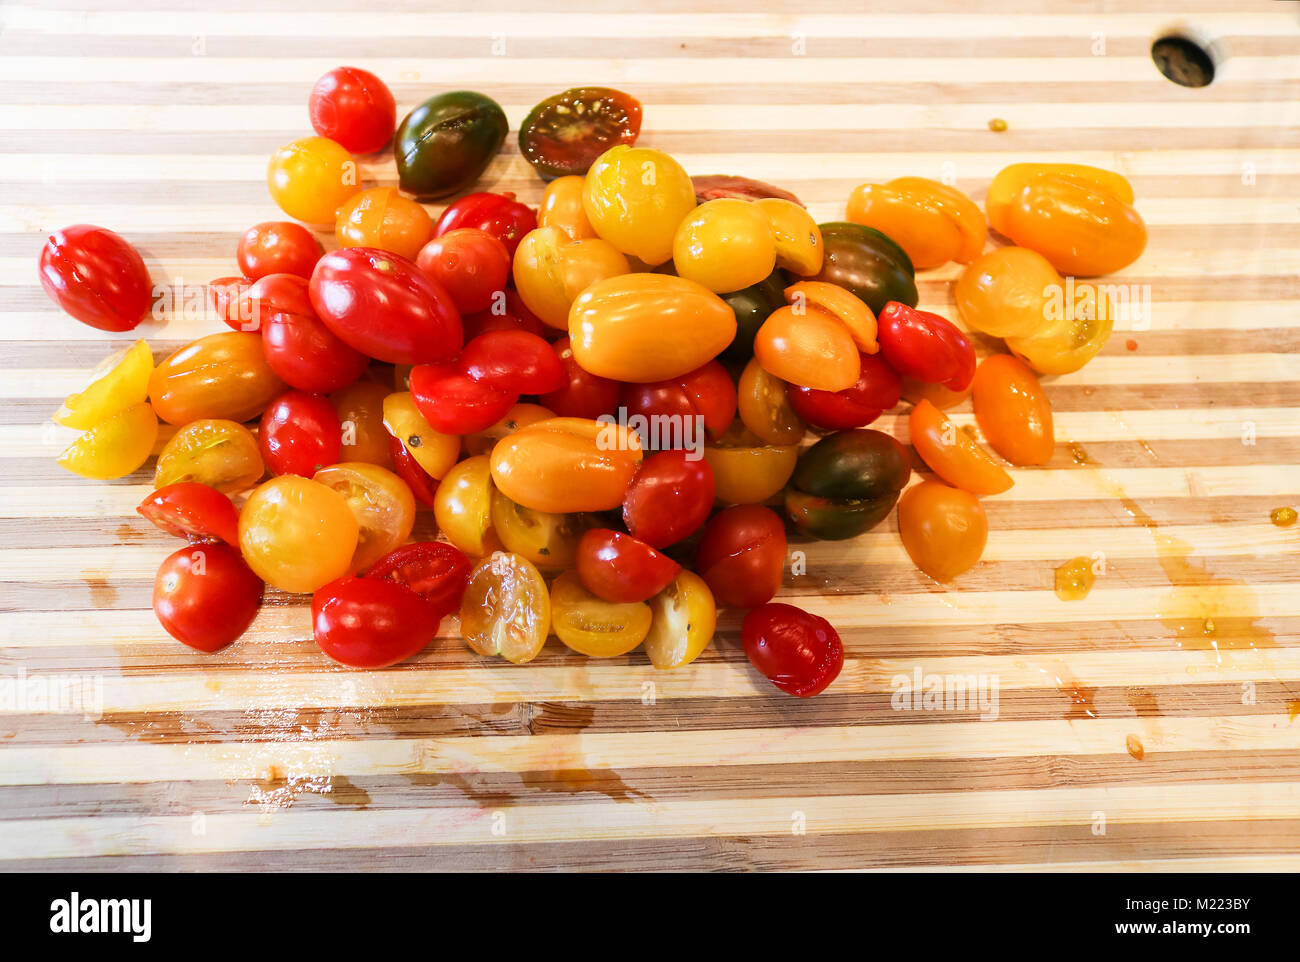 Ein Haufen von saftig bunte Trauben Tomaten in der Hälfte auf einem stiped Holz Schneidebrett bereit zu Gericht, gehackt Stockfoto